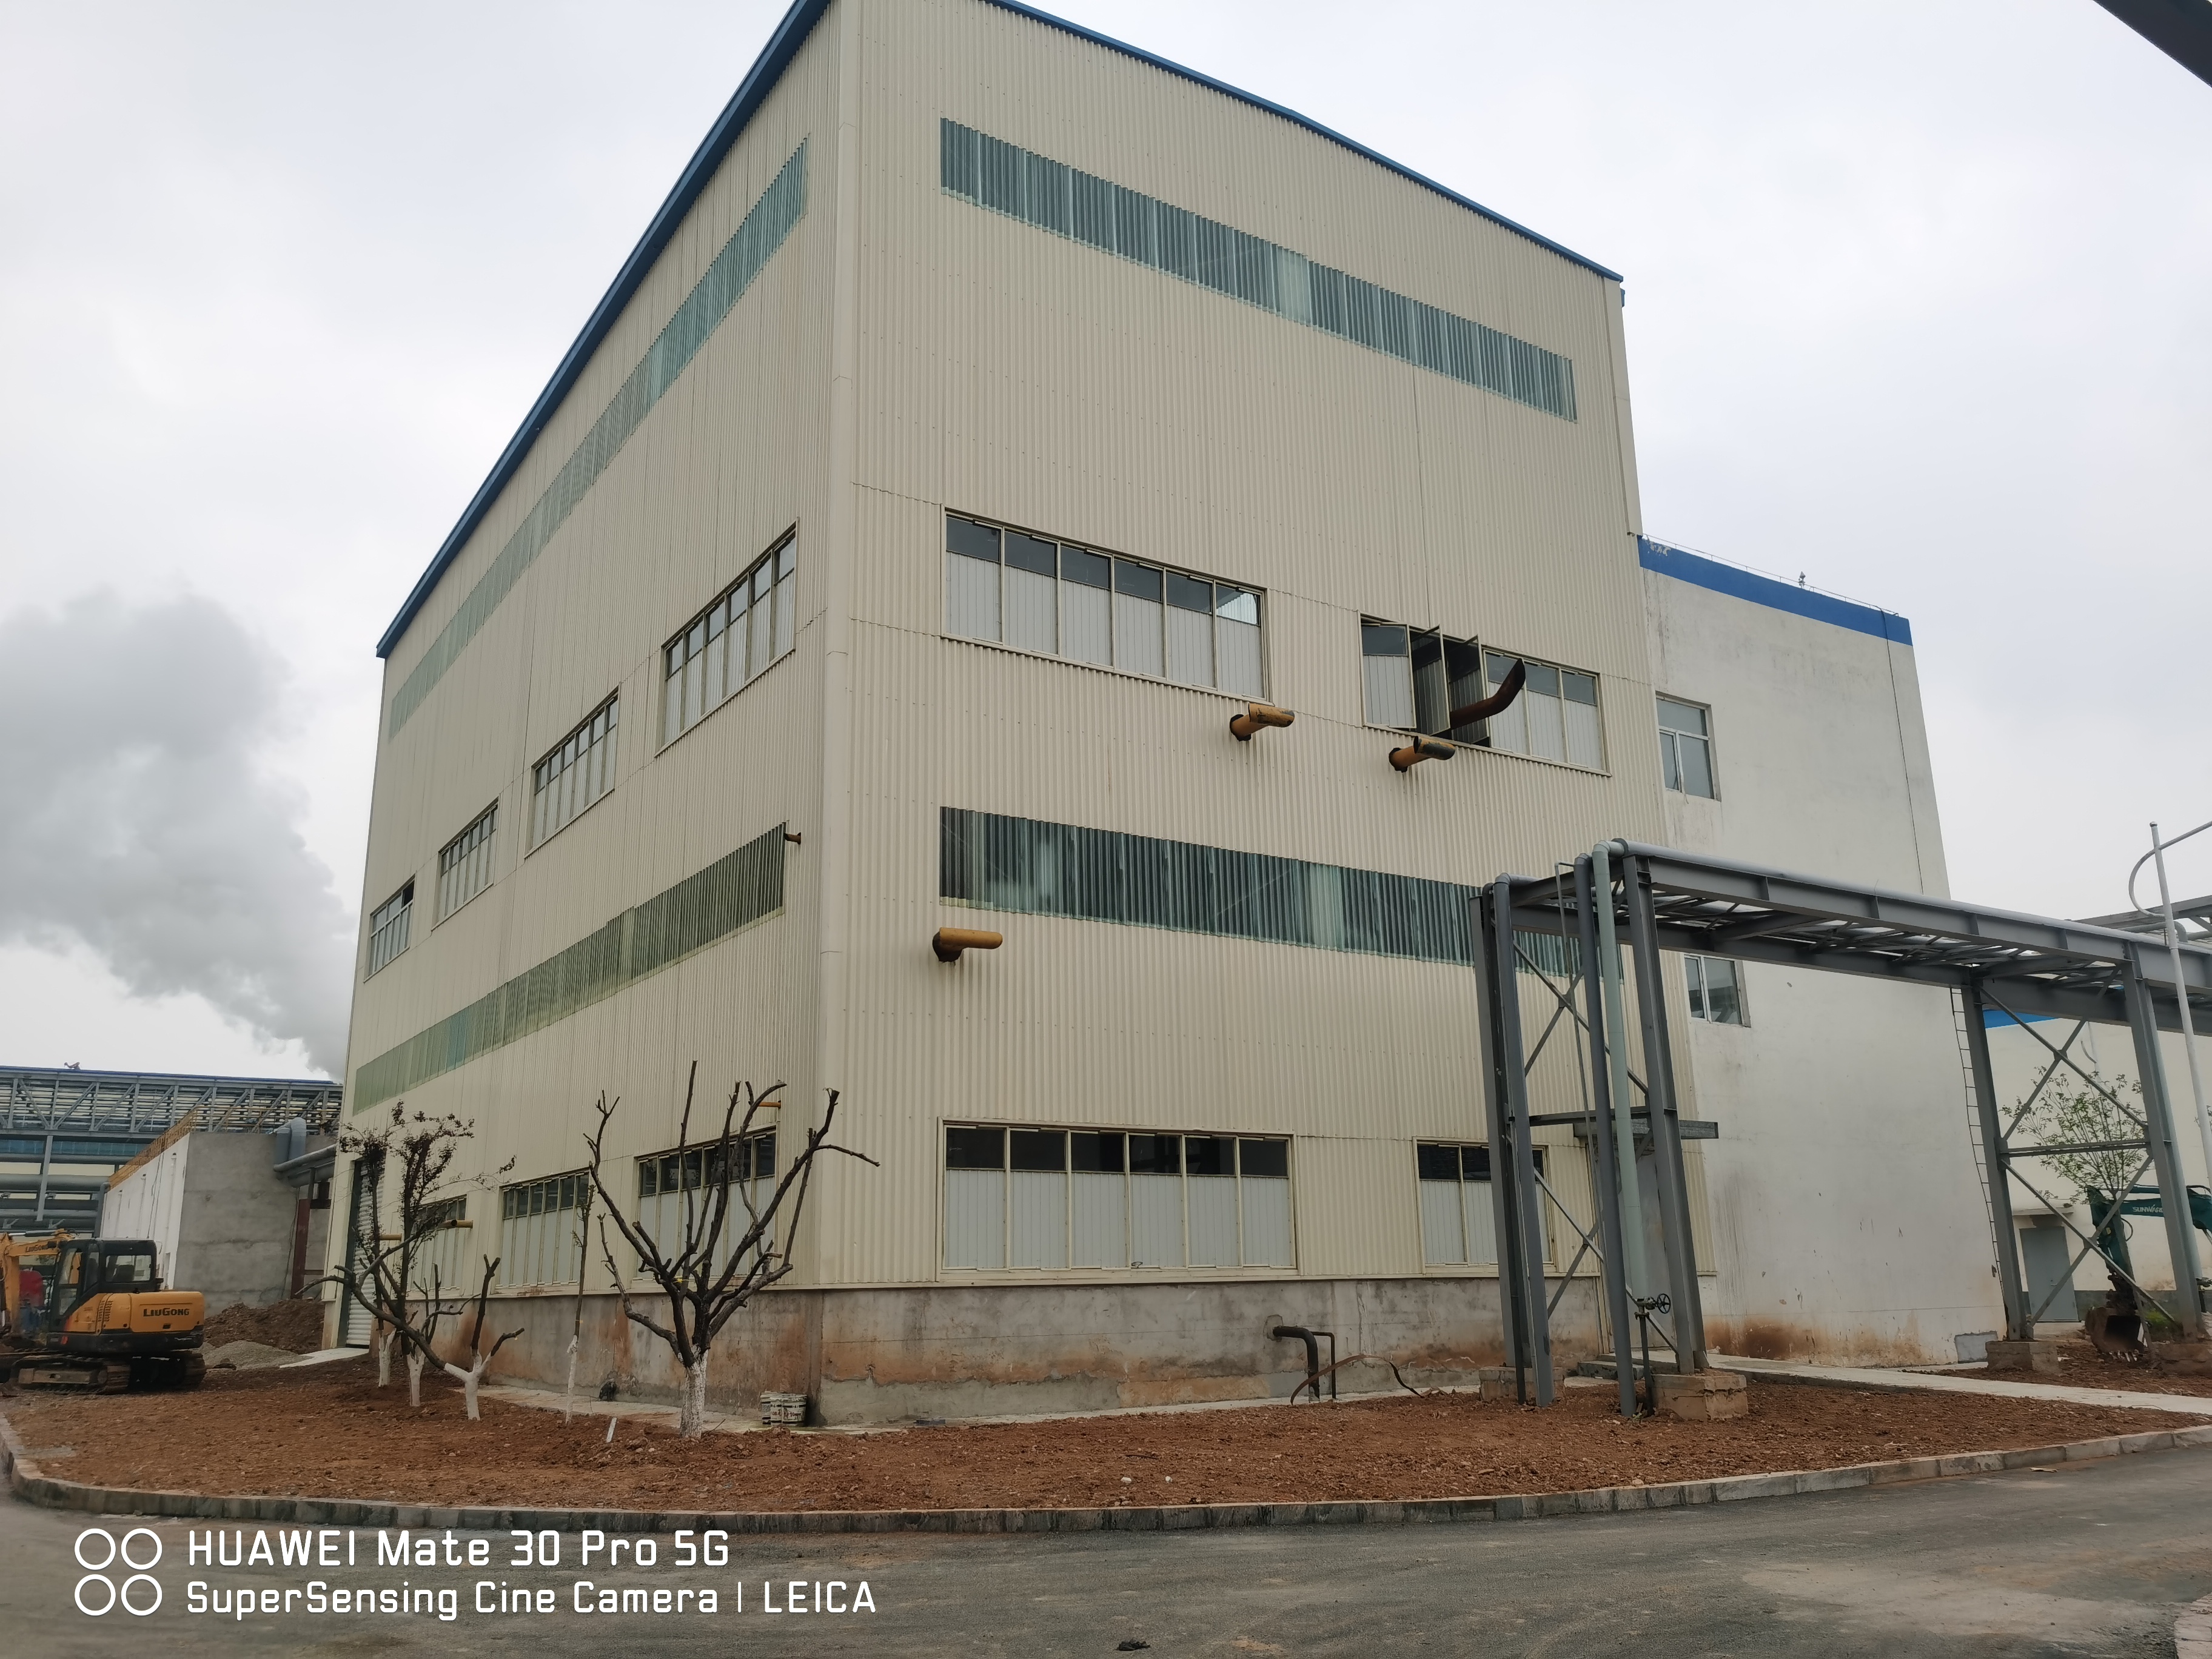 石家莊鋼鐵有限責任公司環保搬遷產品升級改造項目飽和蒸汽余熱發電工程